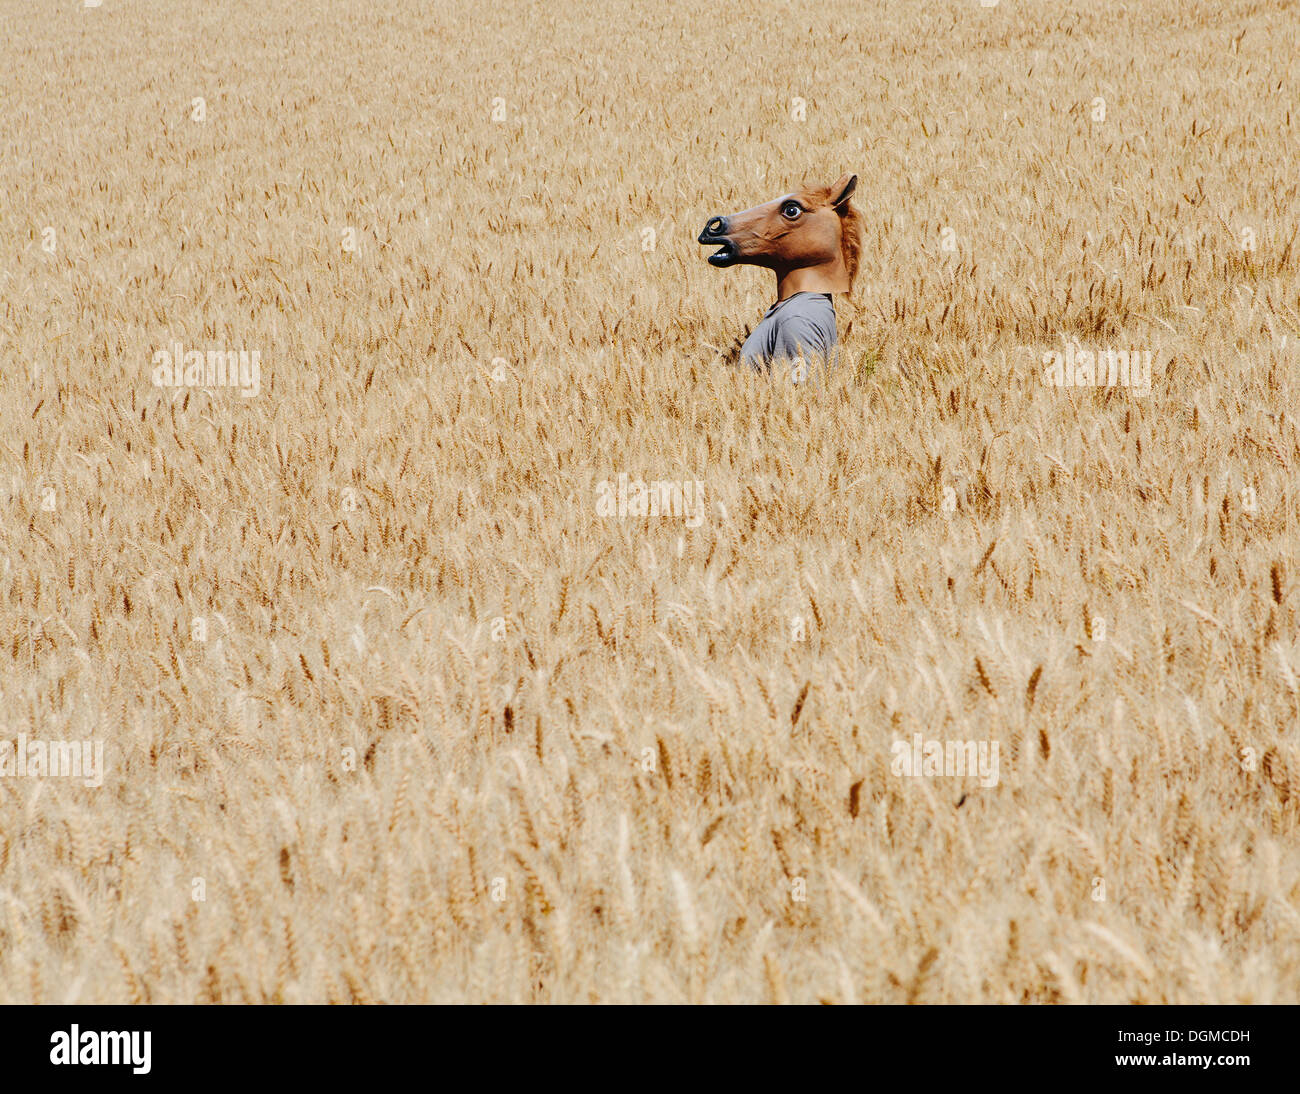 Campi di grano in Washington. Una persona che indossa una testa di cavallo maschera animale emergente al di sopra del mais mature. Foto Stock